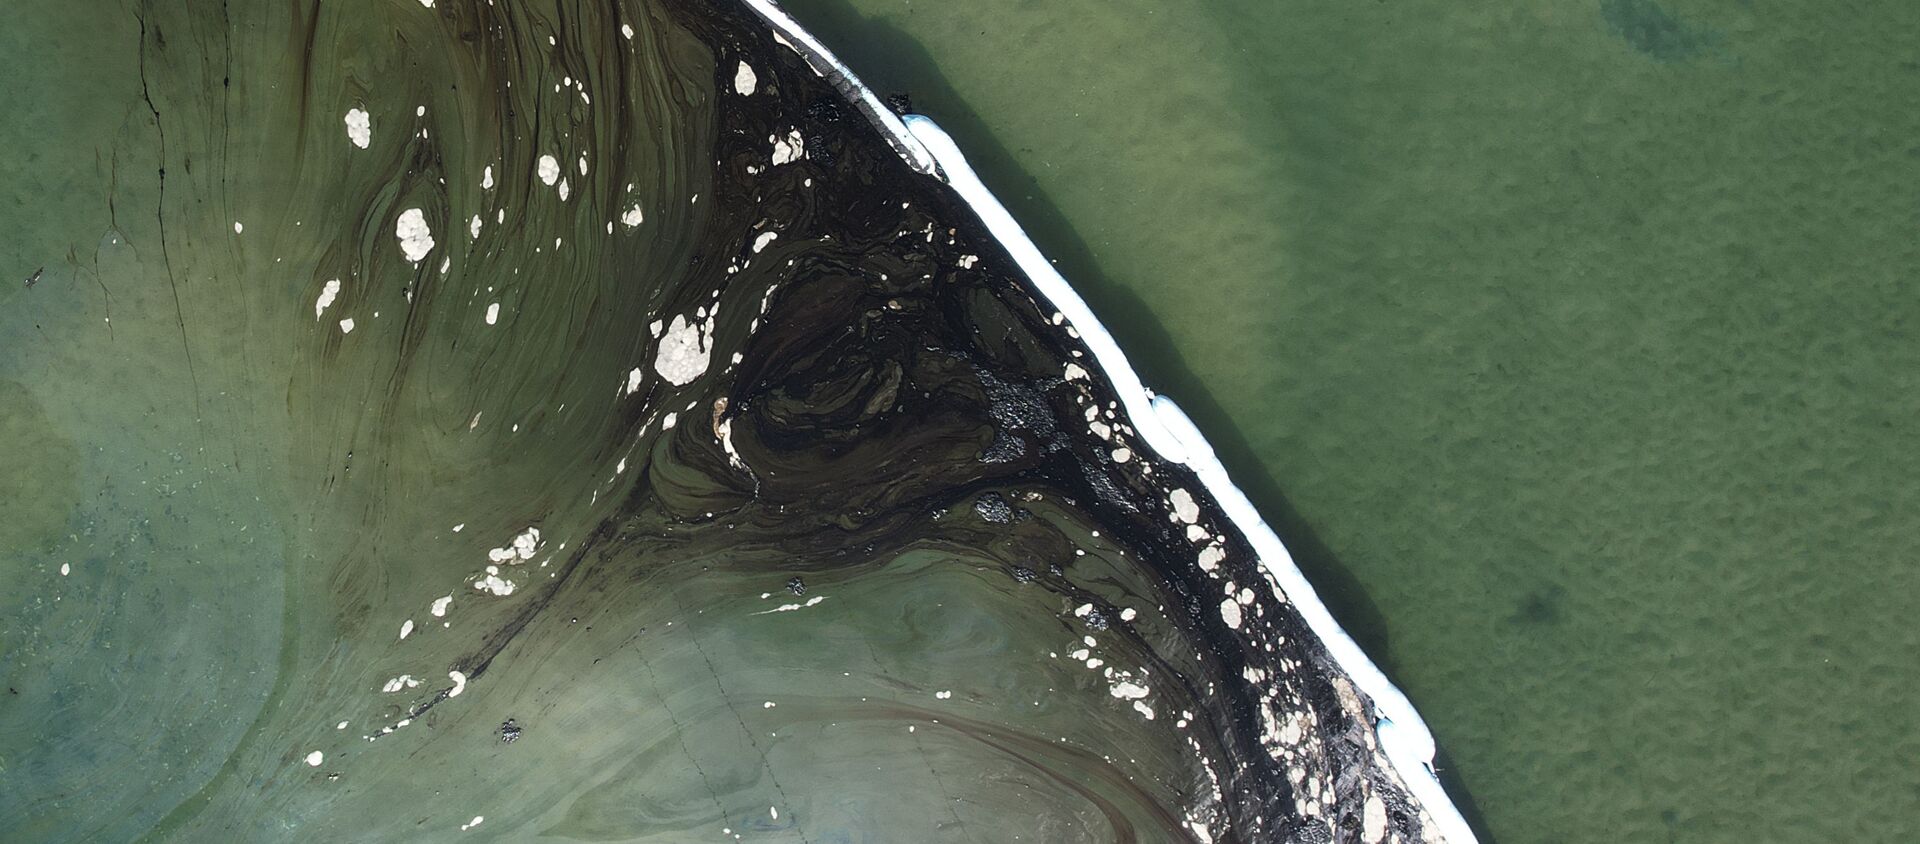 ニューポートビーチの海岸で、パイプラインから到達した原油を封じ込めるオイルフェンス - Sputnik 日本, 1920, 05.10.2021